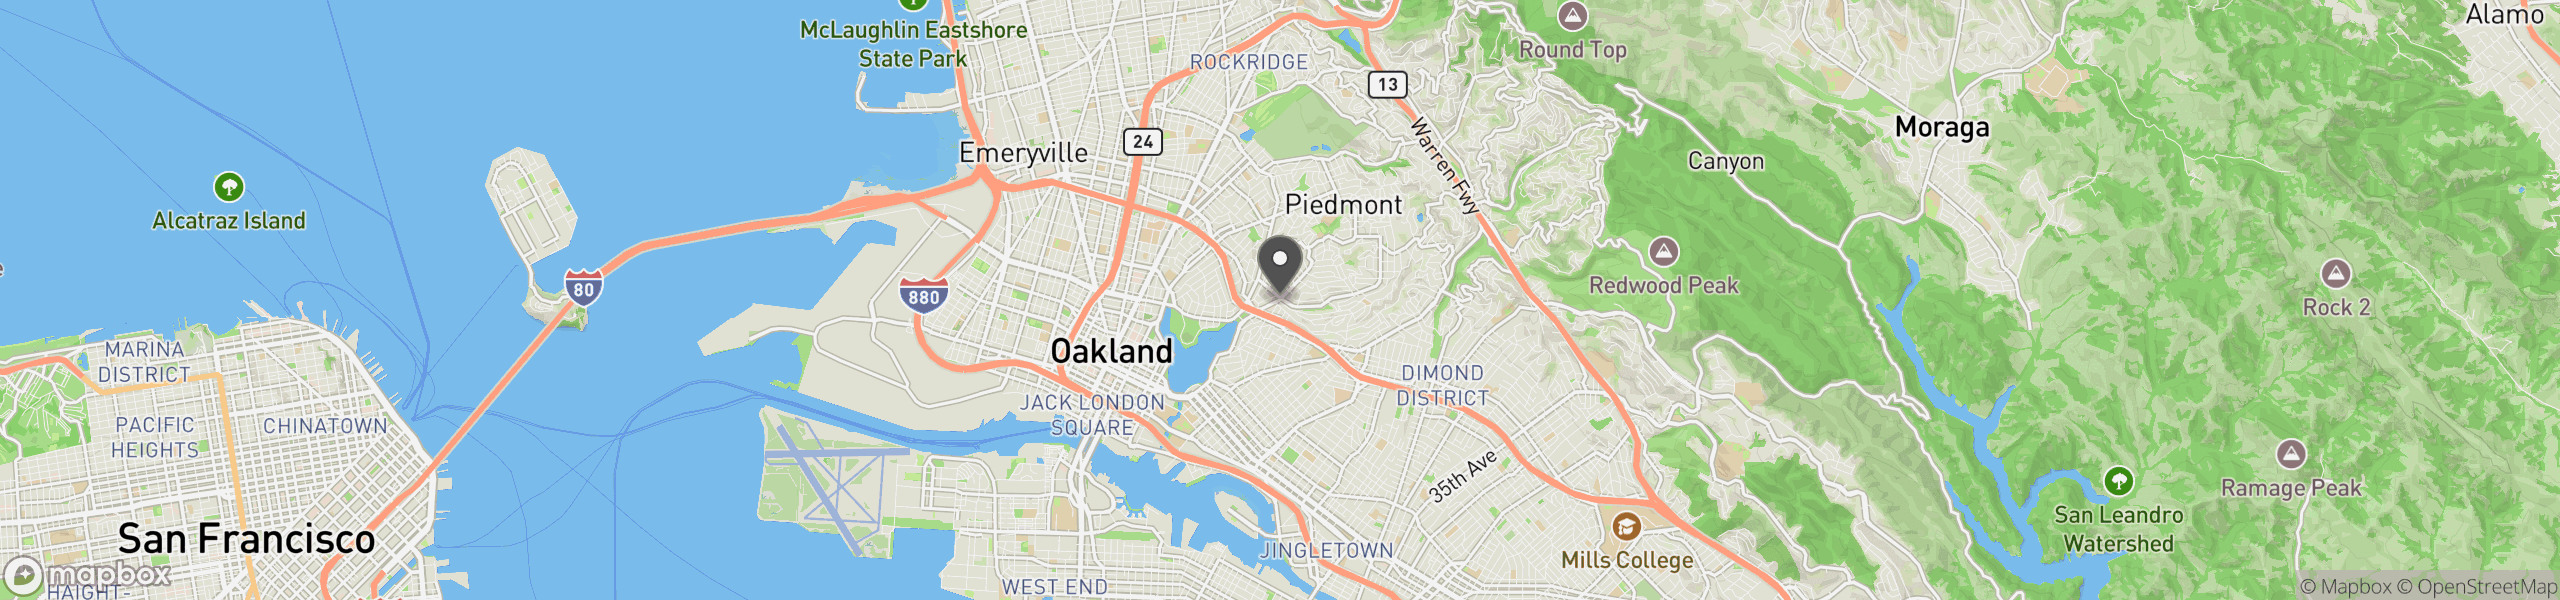 Oakland, CA 94610